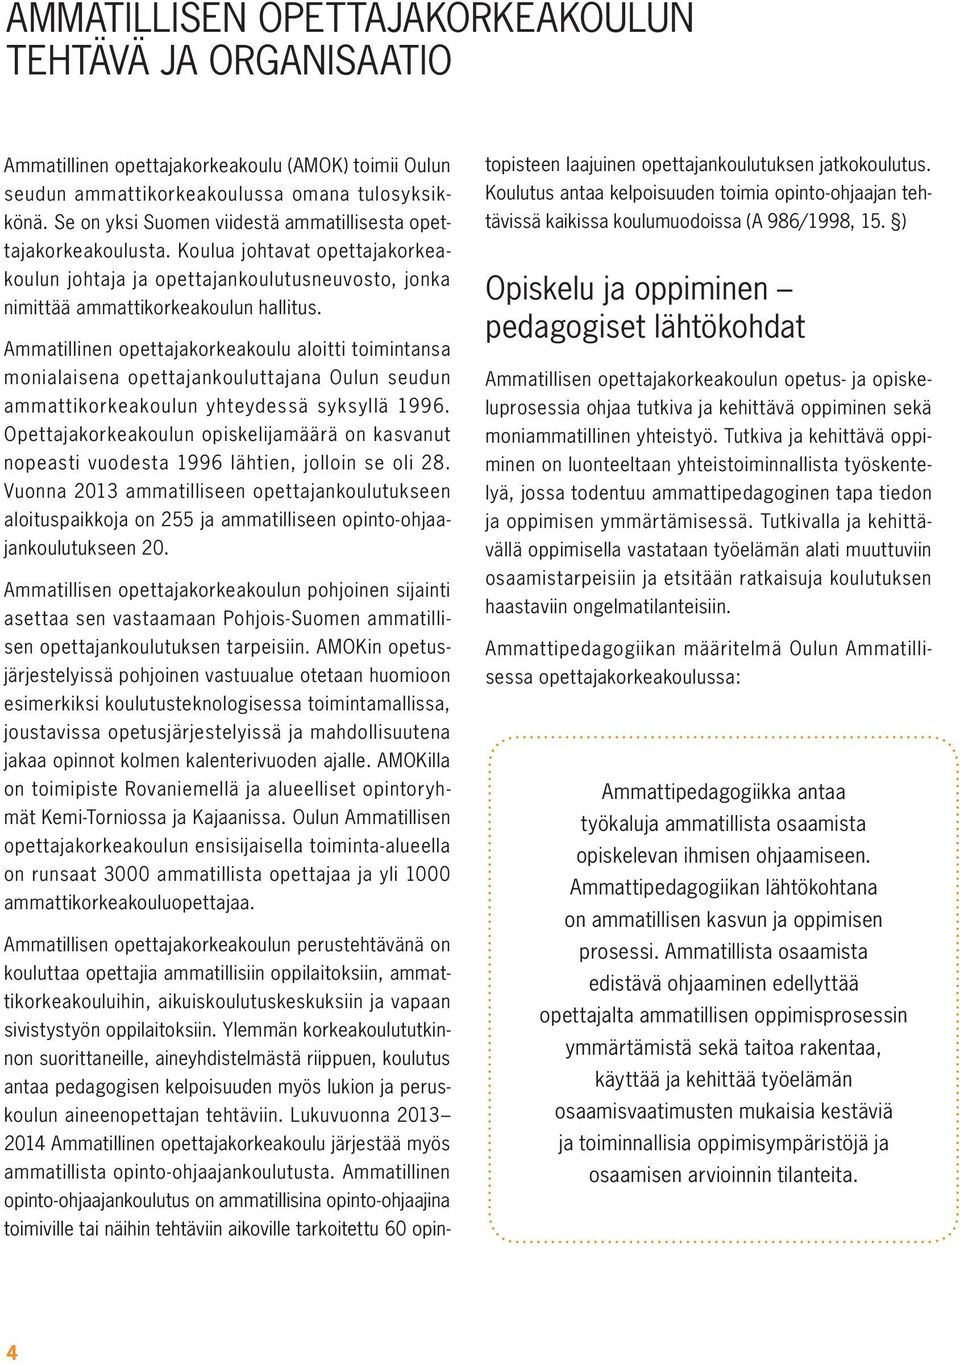 Ammatillinen opettajakorkeakoulu aloitti toimintansa monialaisena opettajankouluttajana Oulun seudun ammattikorkeakoulun yhteydessä syksyllä 1996.